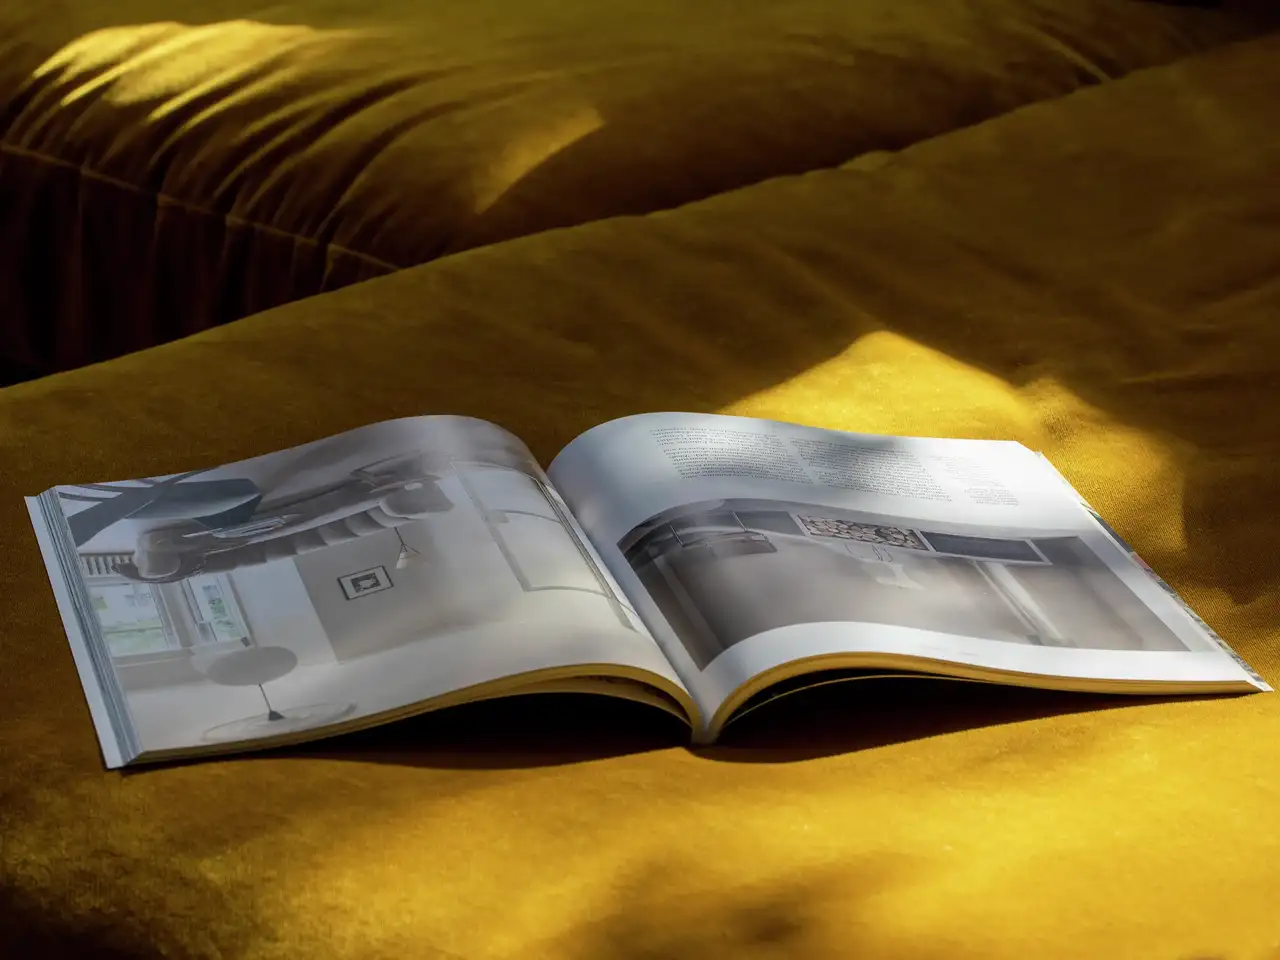 Offene Zeitschrift auf goldener Samtoberfläche im Sonnenlicht, die Innenarchitektur präsentiert.